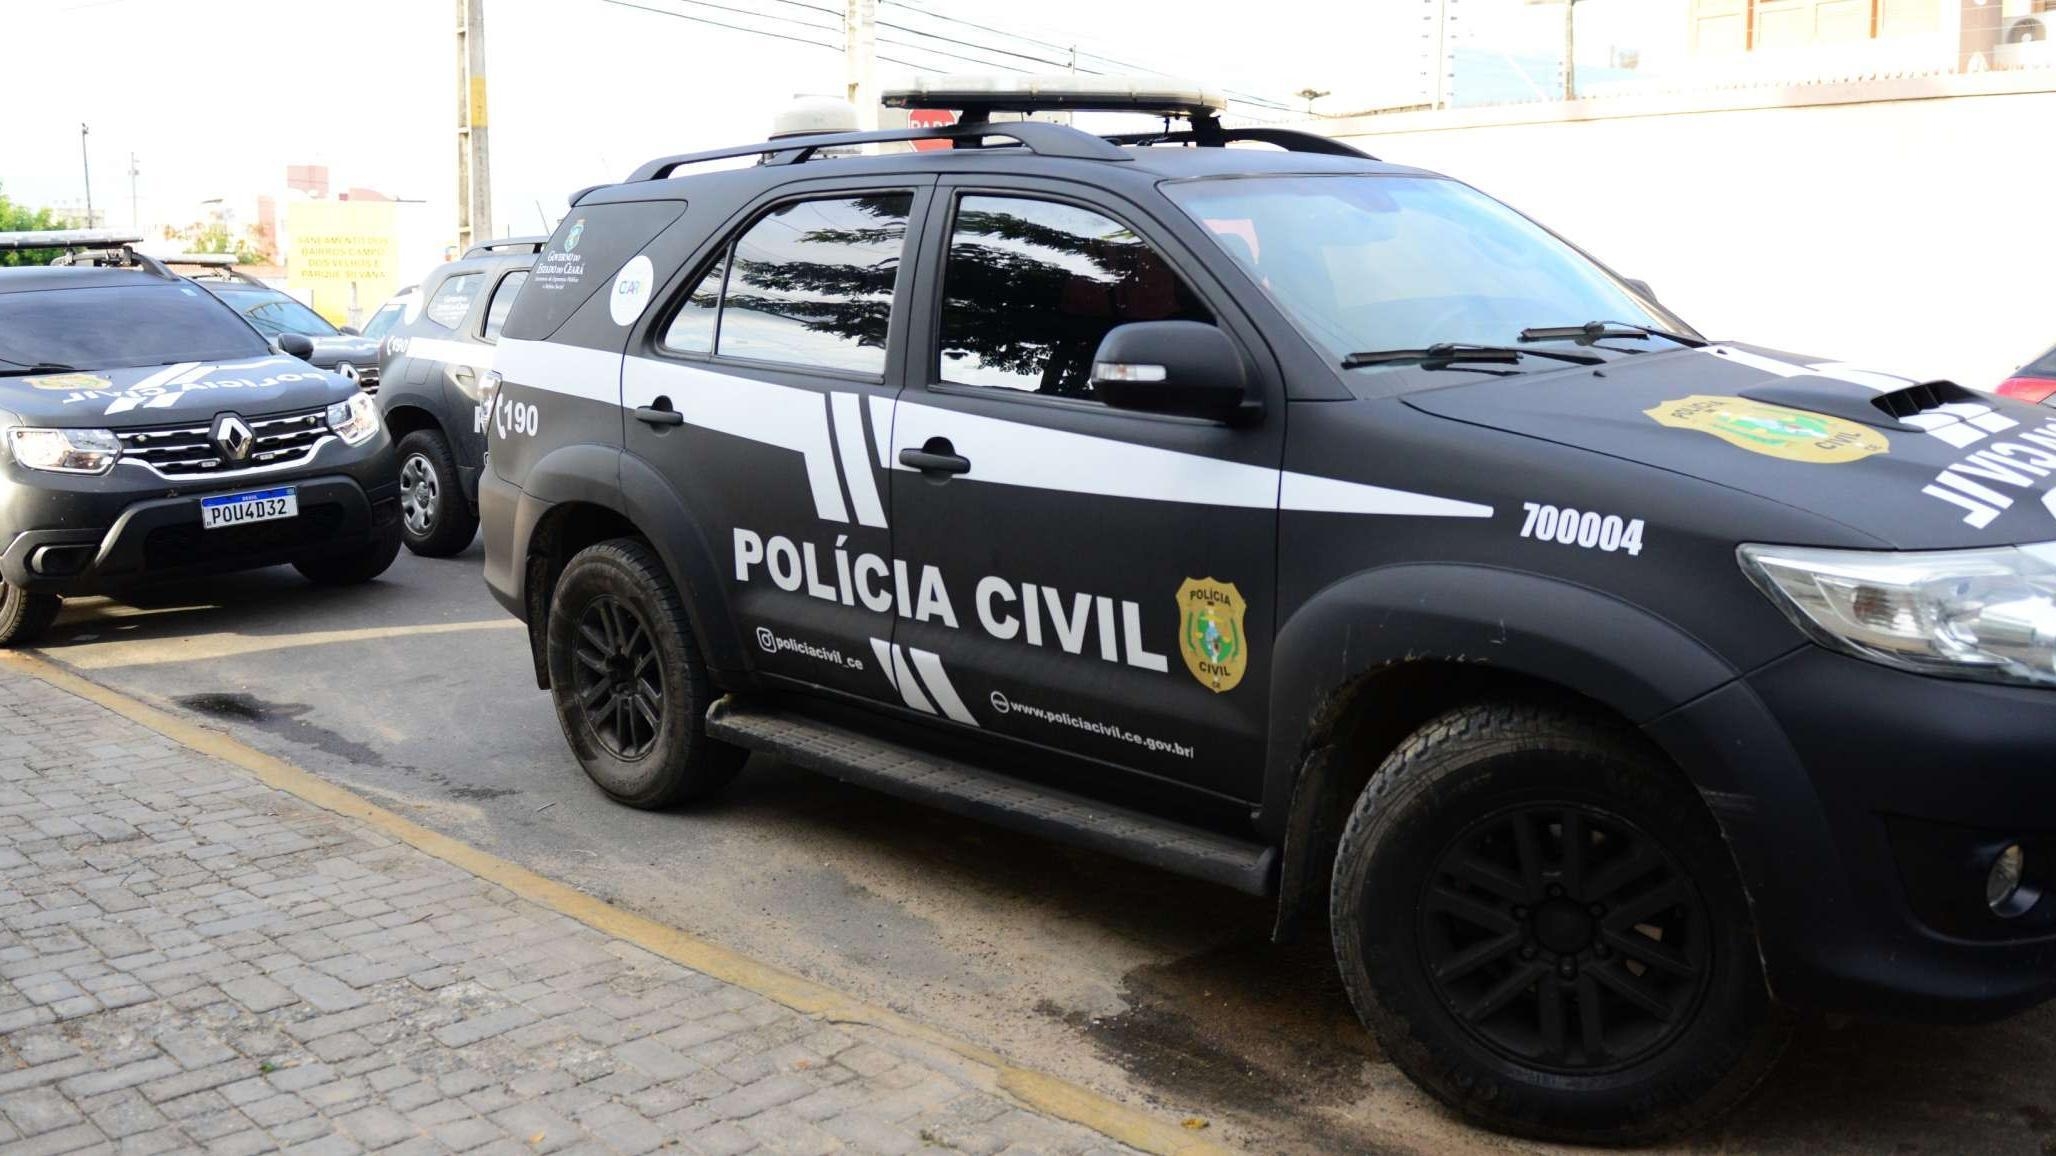 “Mais detalhes serão repassados em momento oportuno para não comprometer os trabalhos policiais”, declarou a Polícia Civil do Ceará ao Portal Metrópoles.